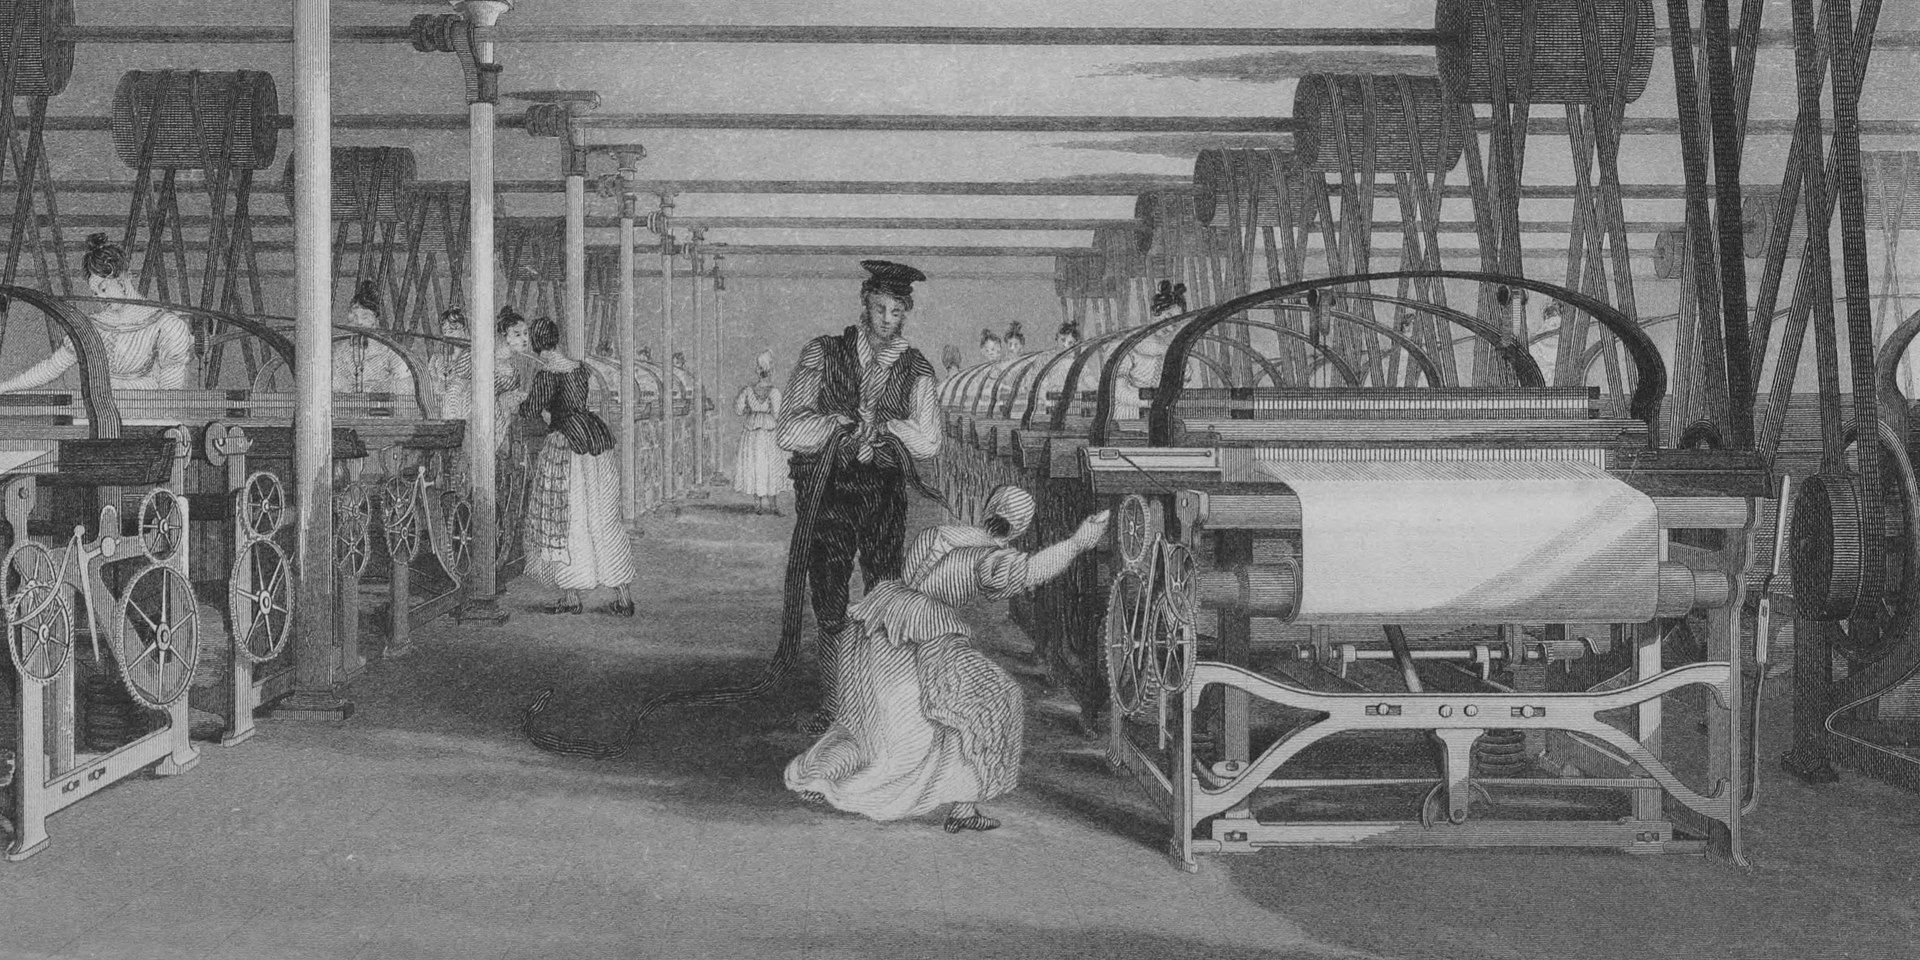 Powerloom_weaving_in_1835. Illustrator T. Allom, Engraver J. Tingle